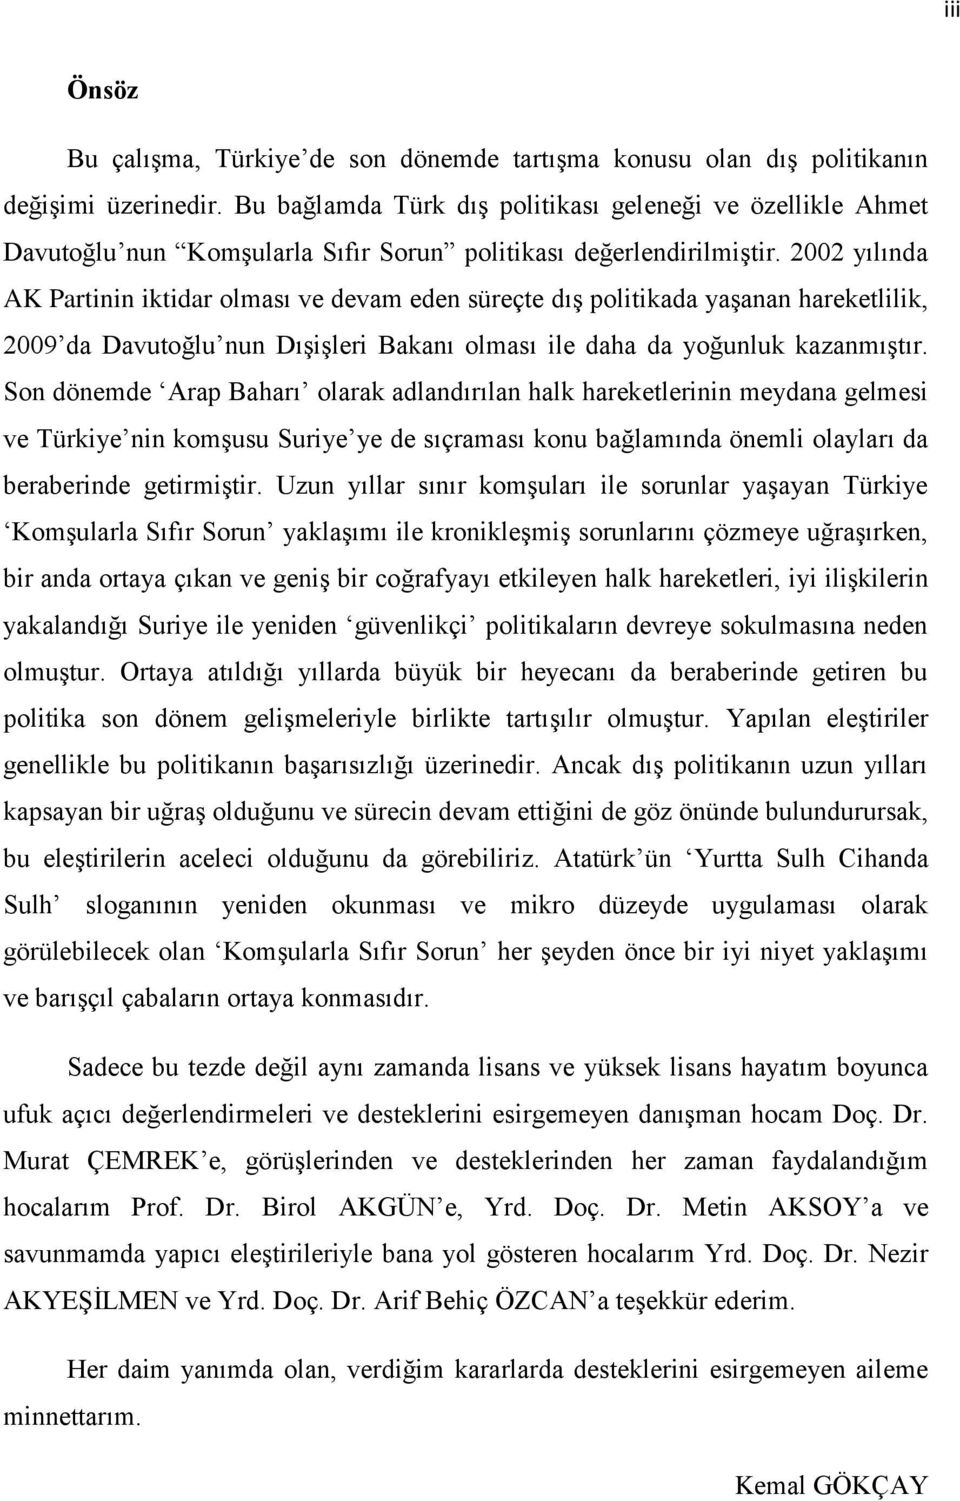 2002 yılında AK Partinin iktidar olması ve devam eden süreçte dıģ politikada yaģanan hareketlilik, 2009 da Davutoğlu nun DıĢiĢleri Bakanı olması ile daha da yoğunluk kazanmıģtır.